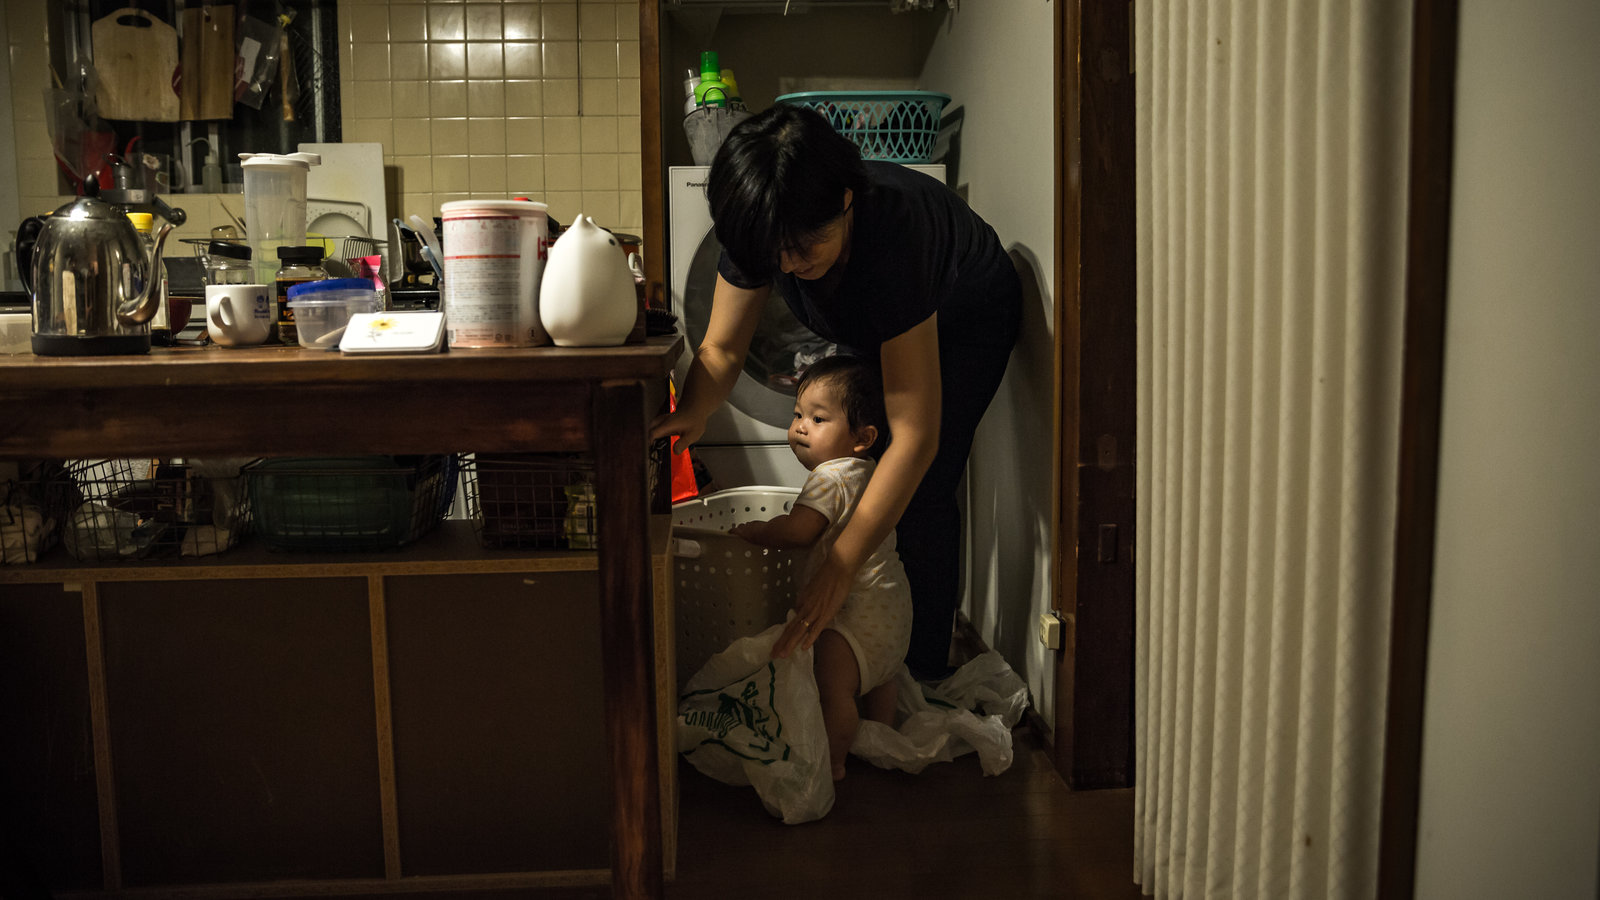 Nghiên cứu cho thấy phụ nữ Nhật Bản chán nản vì chồng làm ít việc nhà - Ảnh 1.